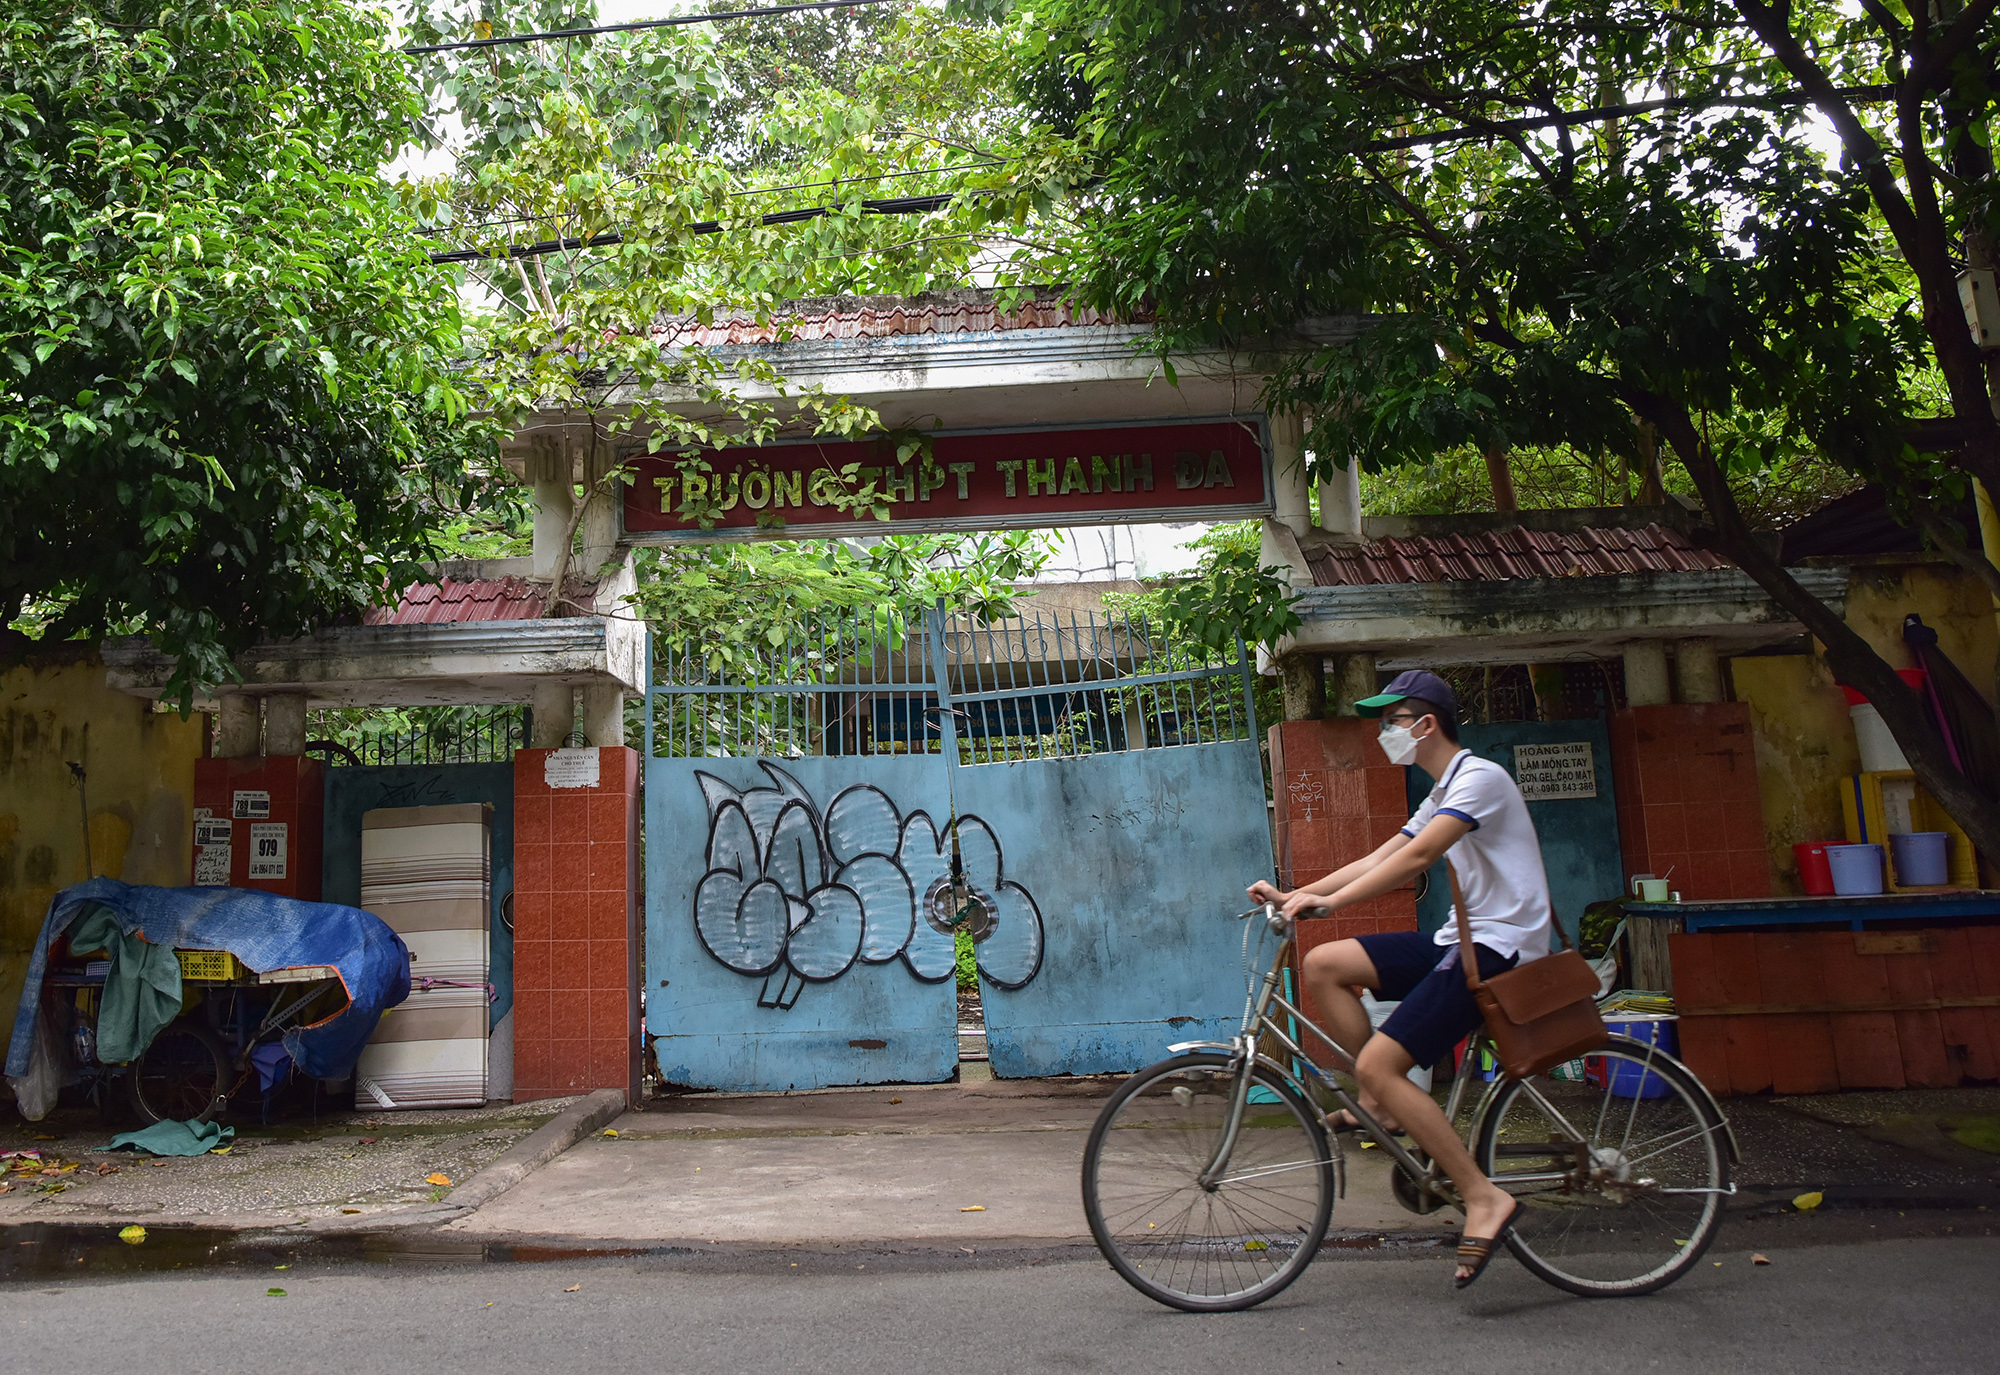 Từ năm học 2017 – 2018, trường THPT Thanh Đa chuyển sang cở sở mới trên đường Nguyễn Xí (quận Bình Thạnh, TP.HCM). Sau hơn 5 năm đóng cửa, ngôi trường này trở nên hoang phế bên cạnh các dãy cư xá Thanh Đa đang bị xuống cấp nhiều năm nay.